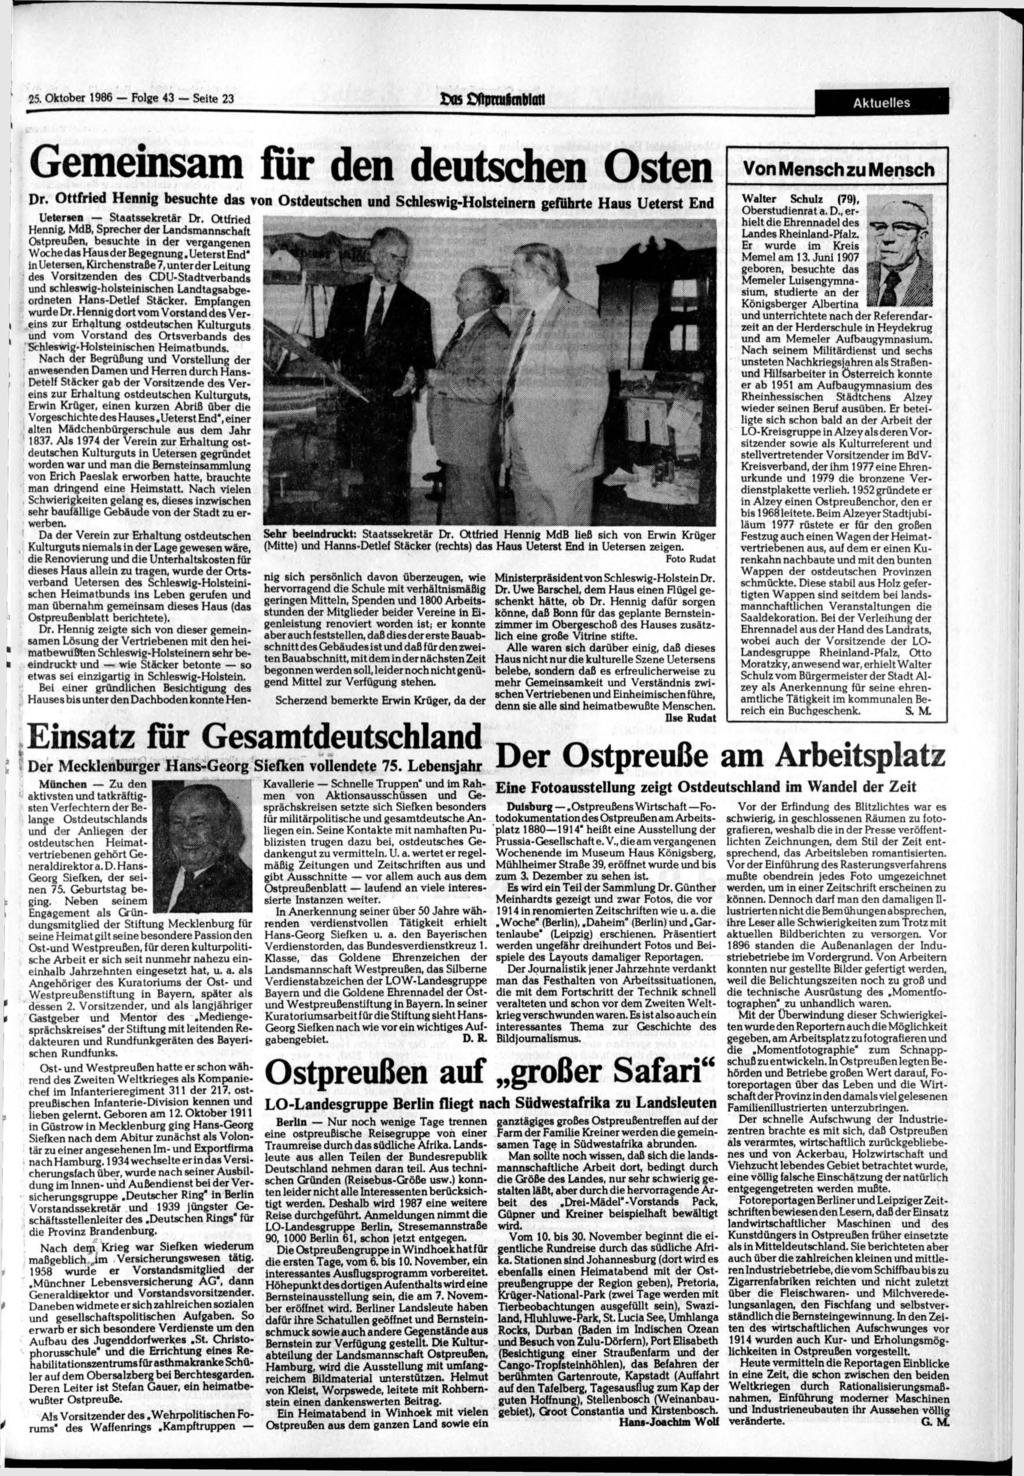 25. 1986 Folge 43 Seite 23 o$ Dftraulmblott Aktuelles Gemeinsam fiir den deutschen Osten Dr.